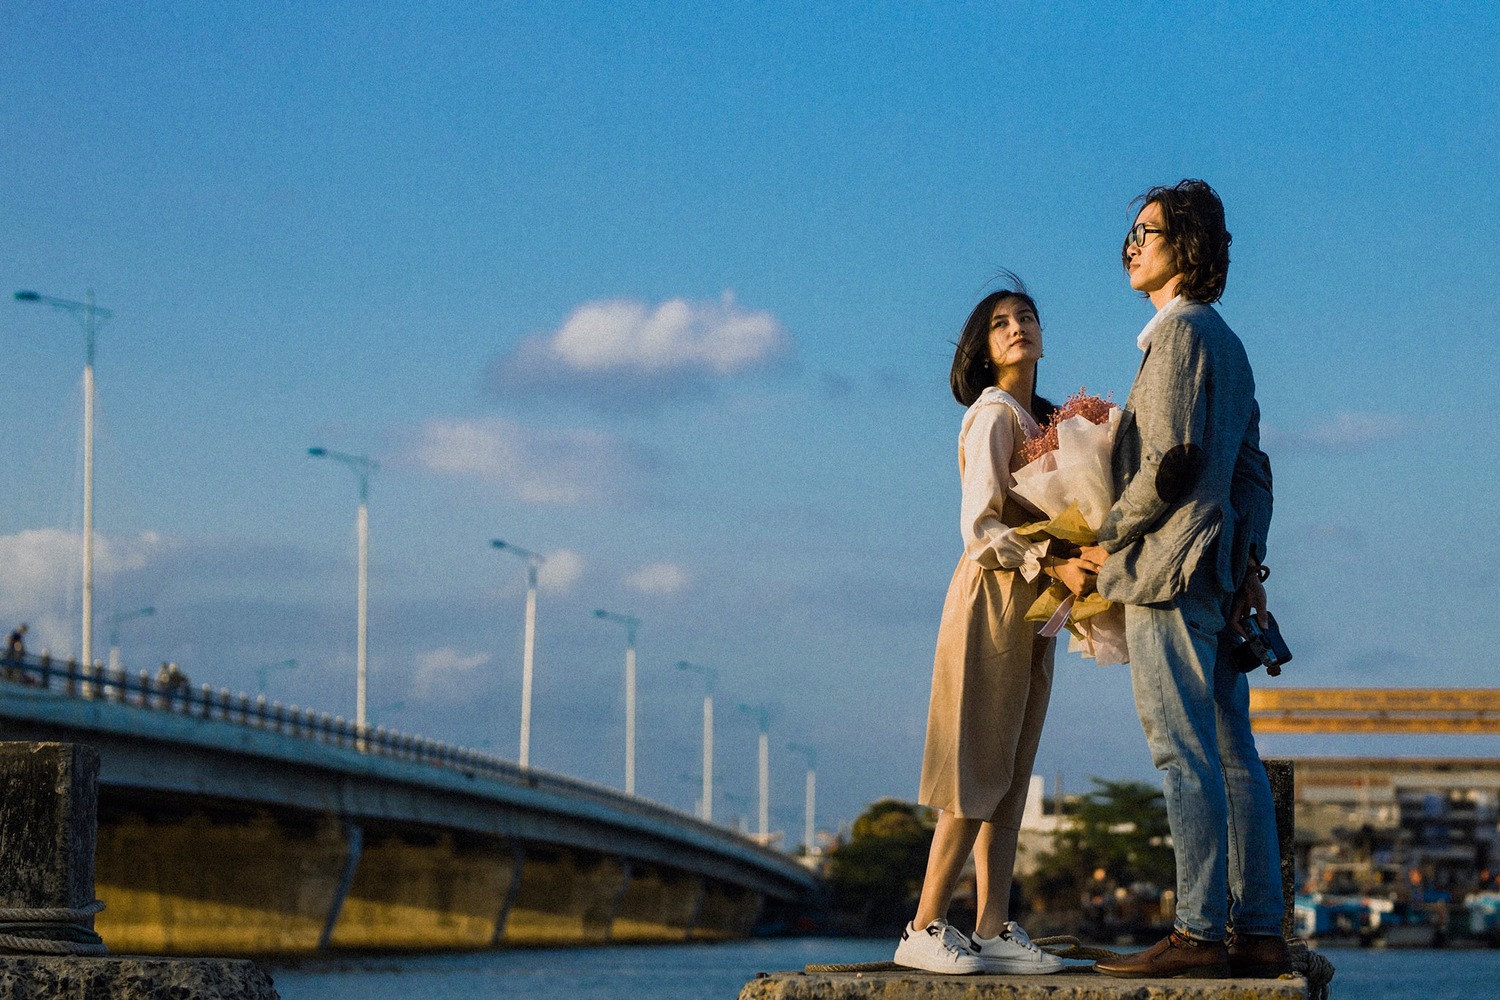 Tìm phút bình yên, lãng mạn qua ống kính anh chàng Kỳ Sang tại cầu Bình Tân Nha Trang 2